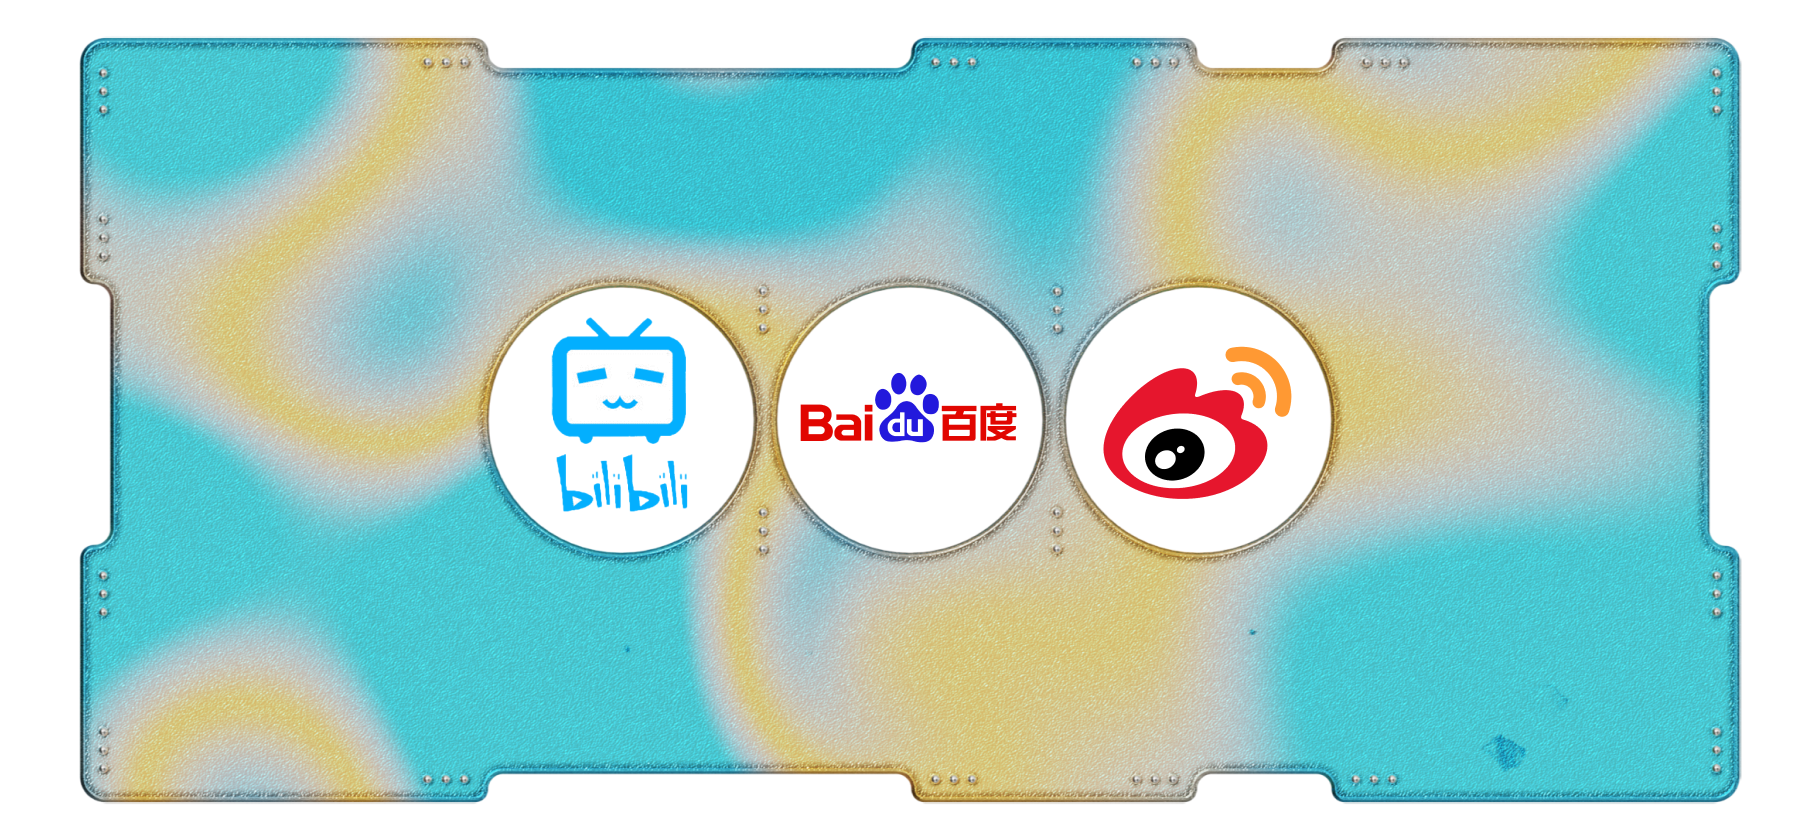 Календарь инвестора: Bilibili, Weibo и Baidu выпустят отчеты